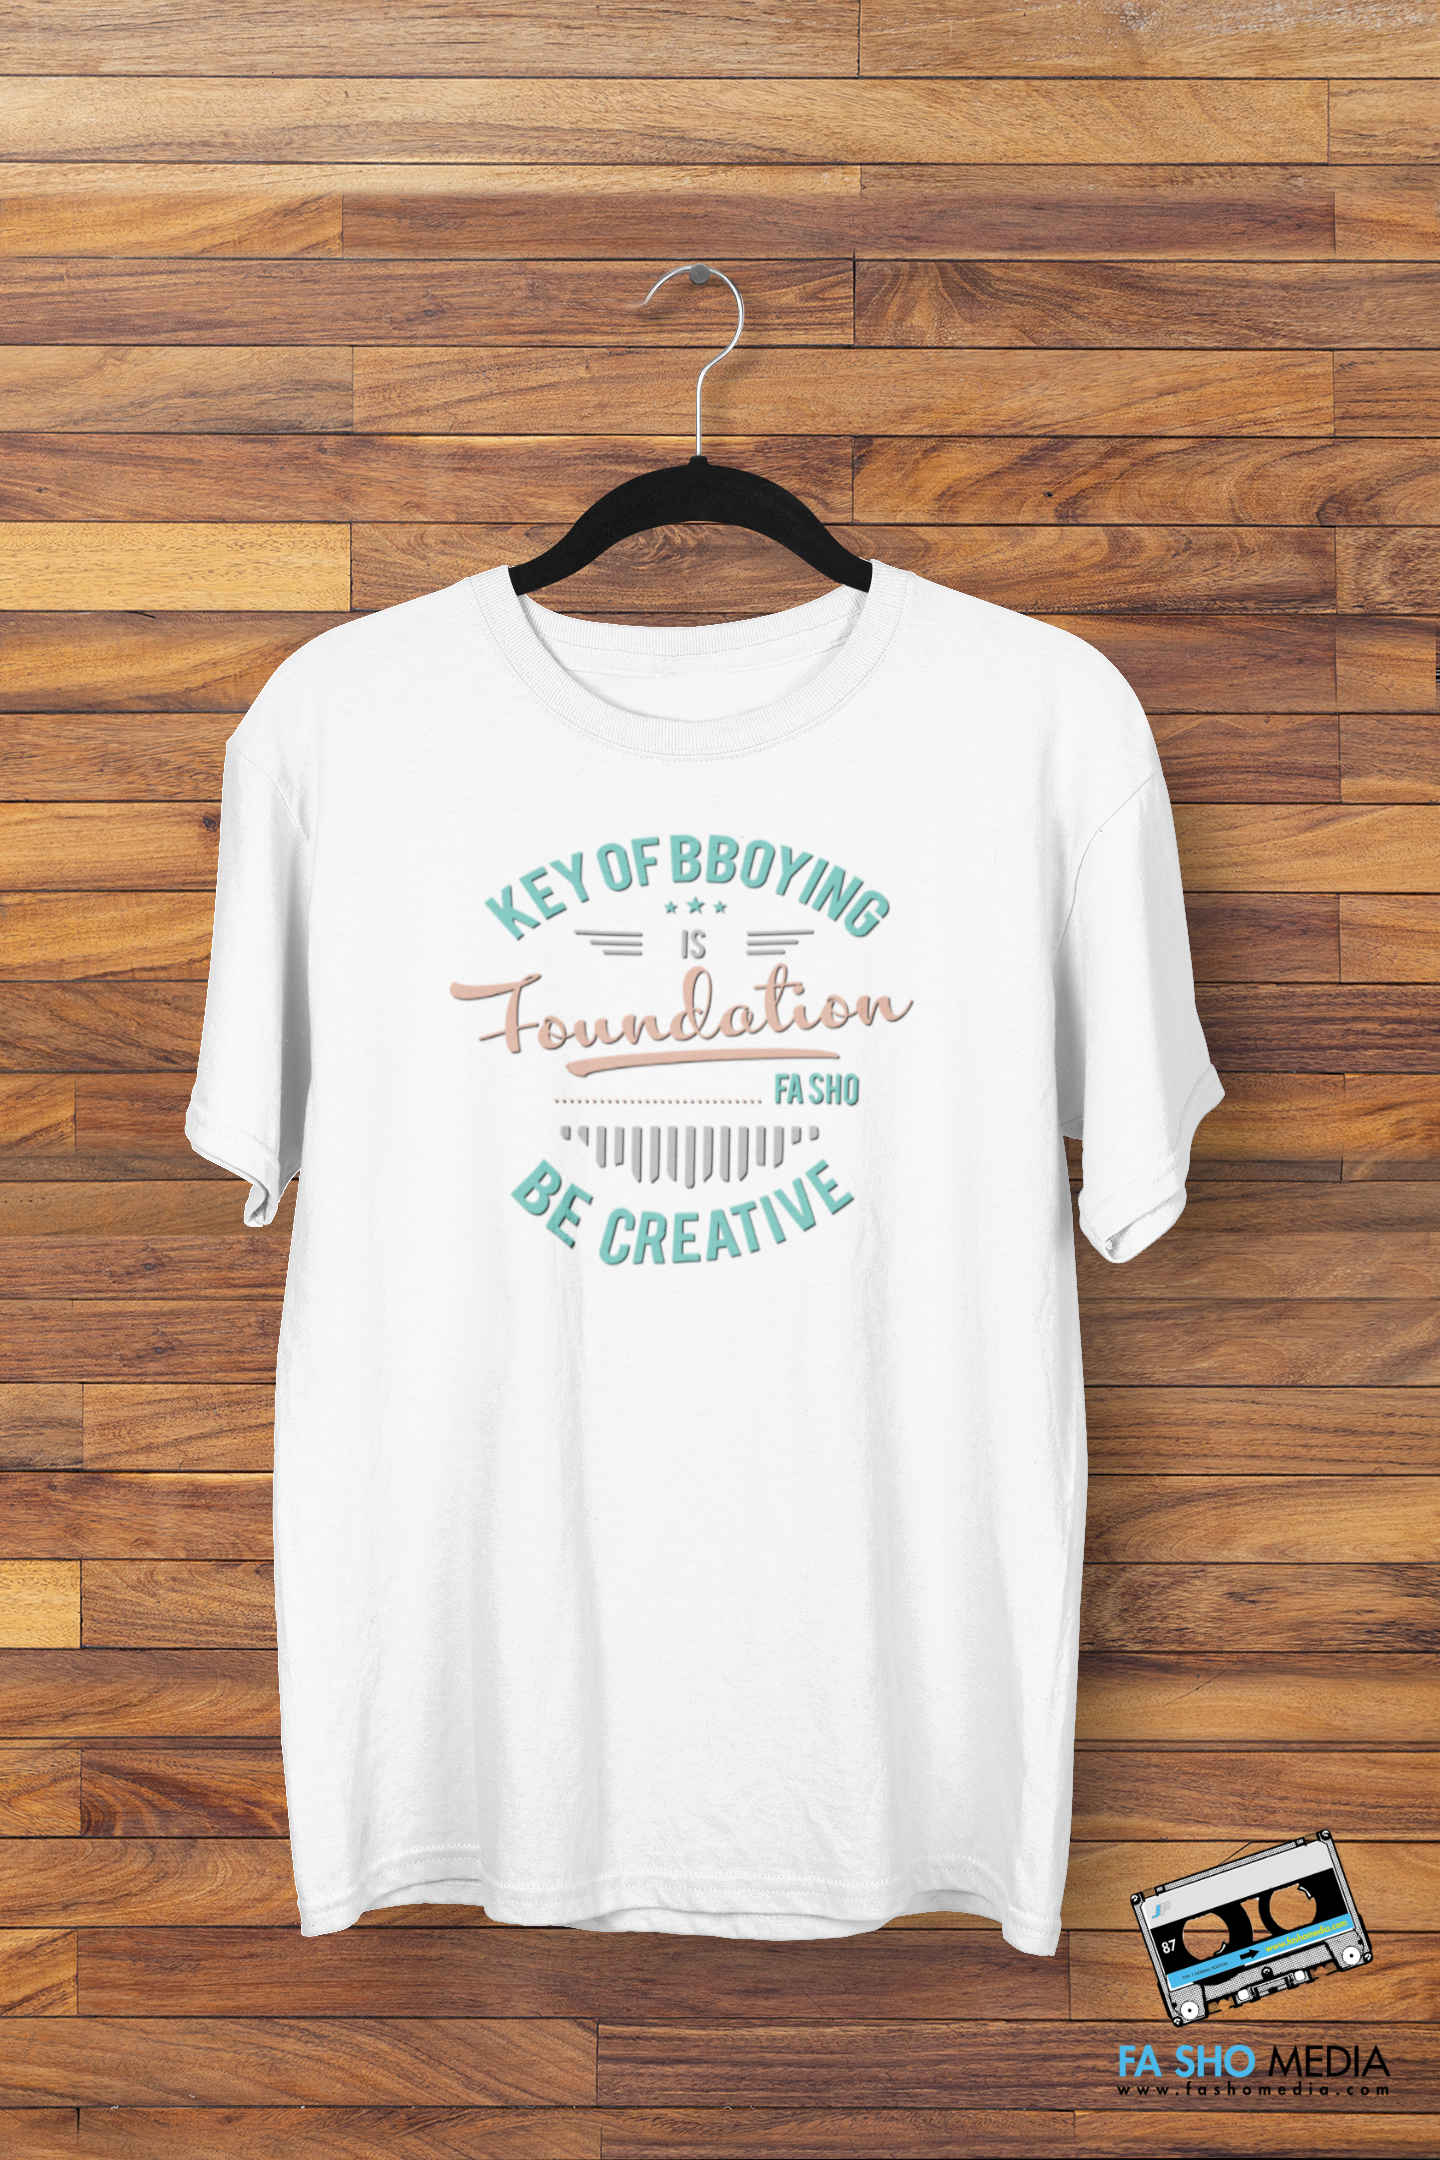 Bboy Foundation Shirt (Men's)